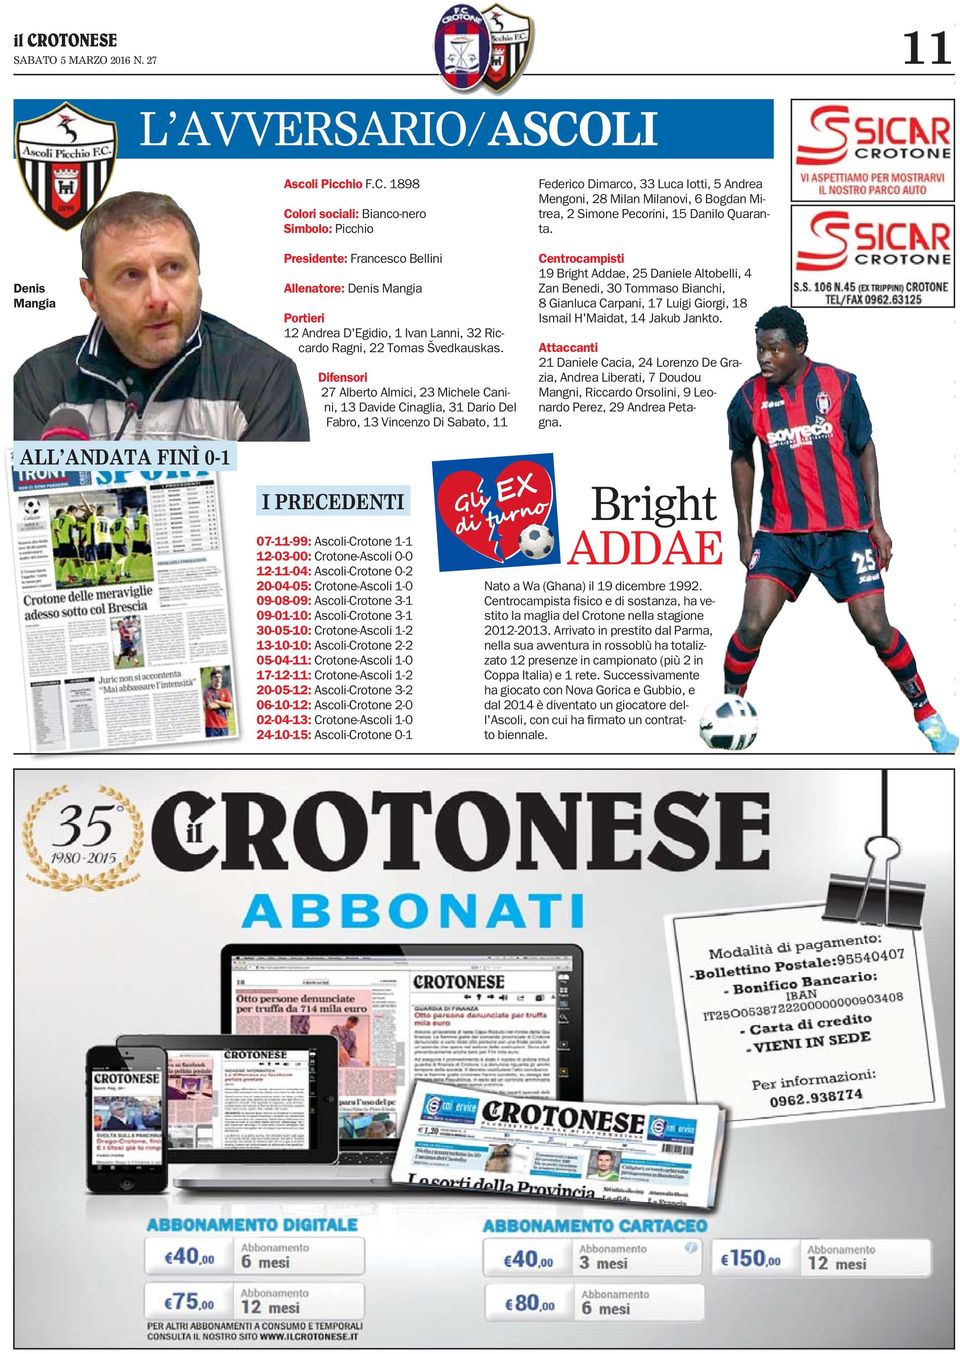 Difensori Alberto Almici, Michele Canini, Davide Cinaglia, Dario Del Fabro, Vincenzo Di Sabato, I PRECEDENTI 0--: Ascoli-Crotone - -0-00: Crotone-Ascoli 0-0 --0: Ascoli-Crotone 0-0-0-0: